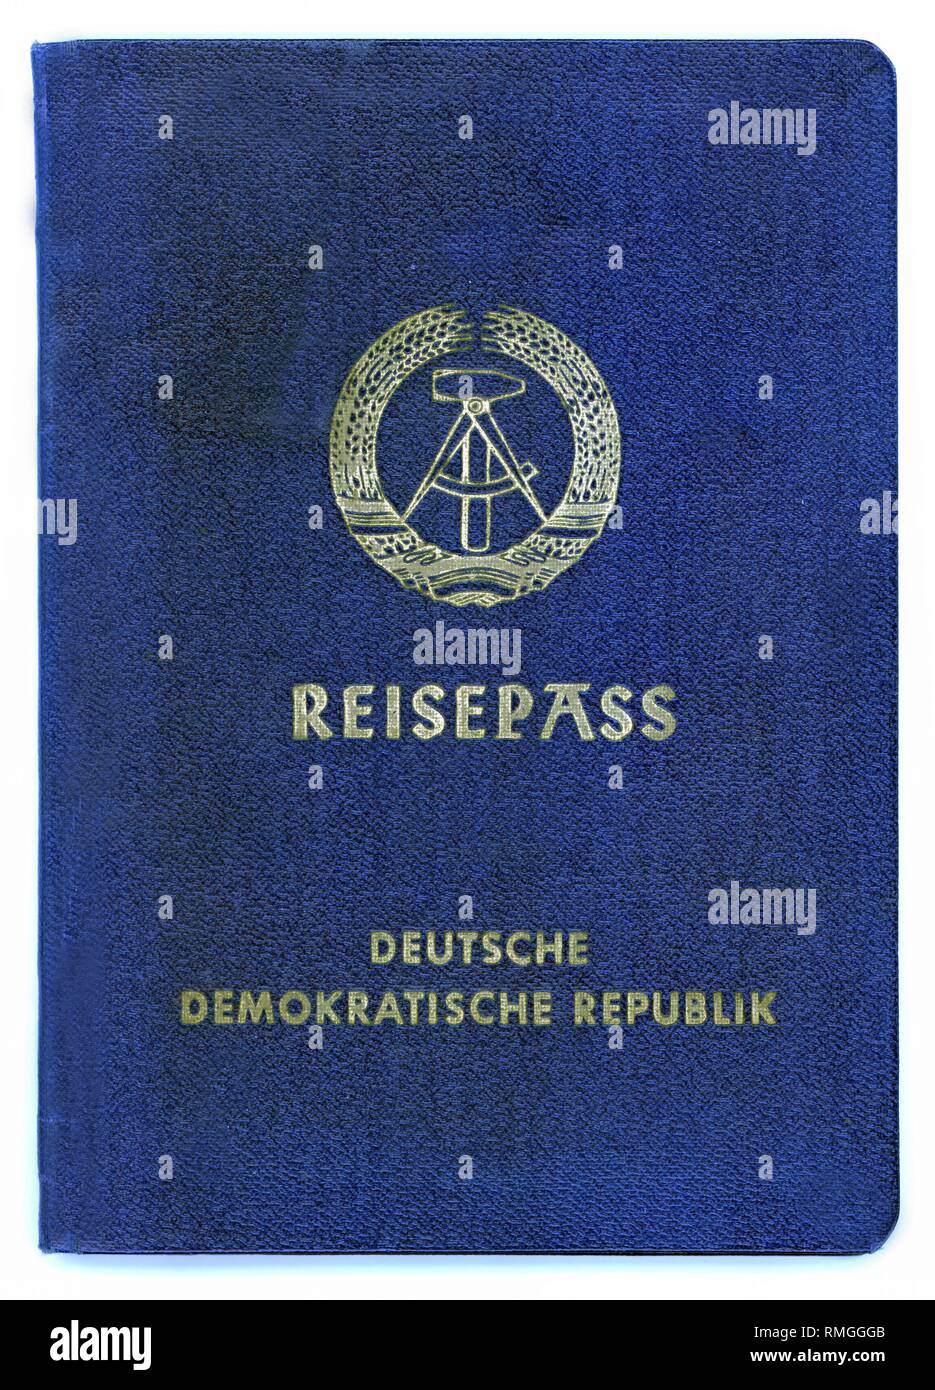 Parte anteriore del tedesco orientale di passaporto per i cittadini tedeschi a partire dal 1957. Data di rilascio Febbraio 17, 1957, Berlino Est. Foto Stock